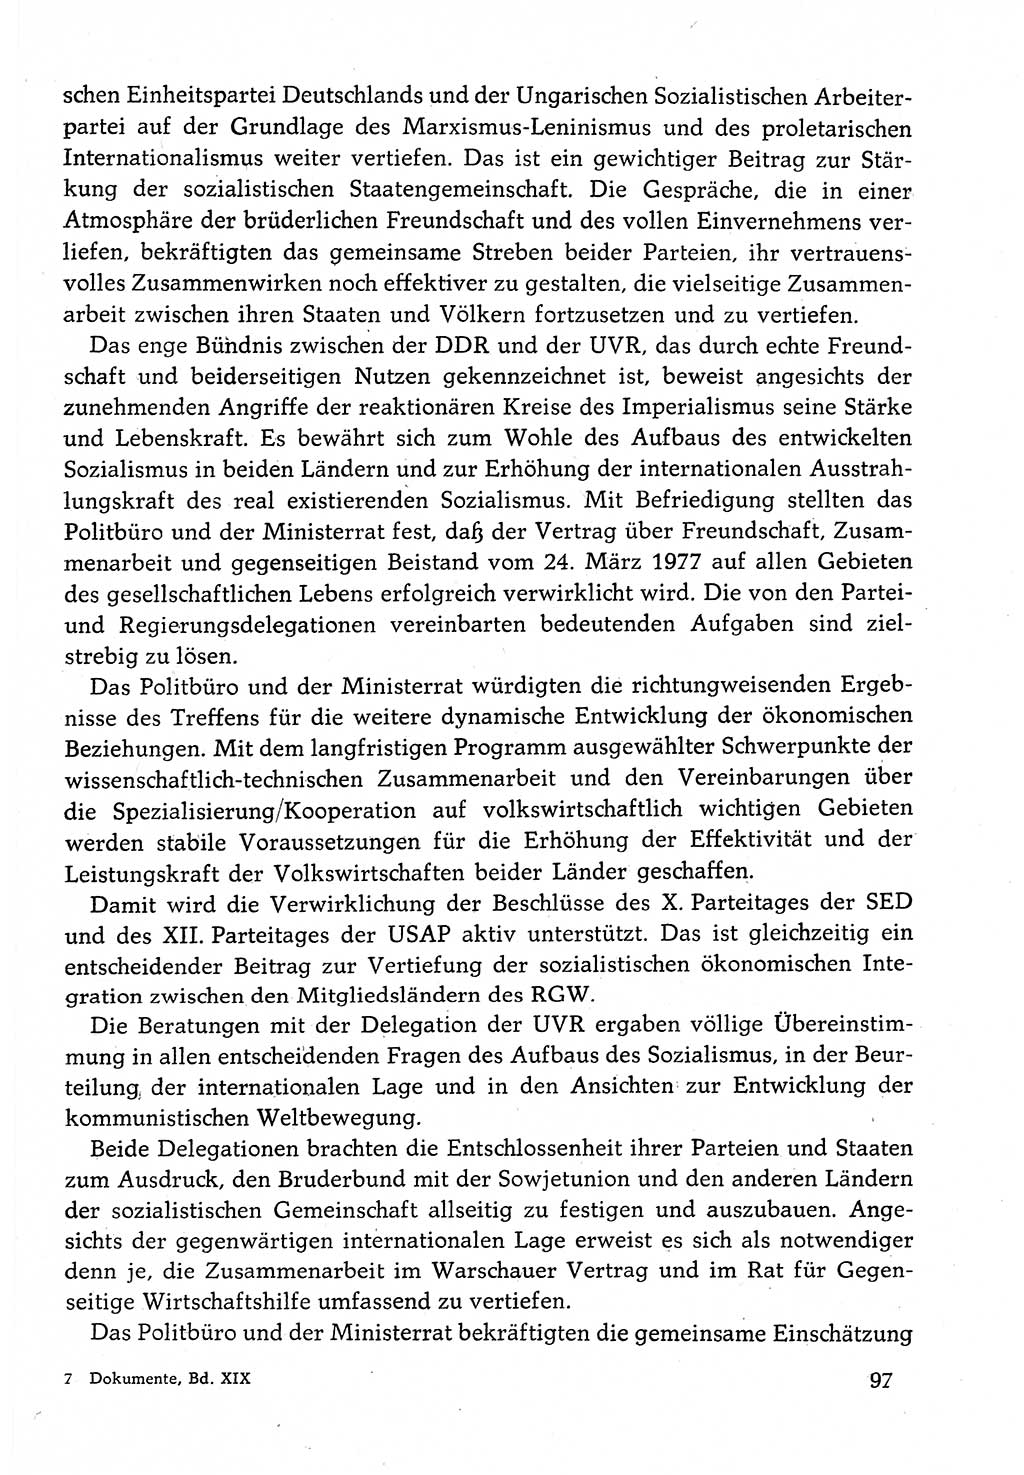 Dokumente der Sozialistischen Einheitspartei Deutschlands (SED) [Deutsche Demokratische Republik (DDR)] 1982-1983, Seite 97 (Dok. SED DDR 1982-1983, S. 97)